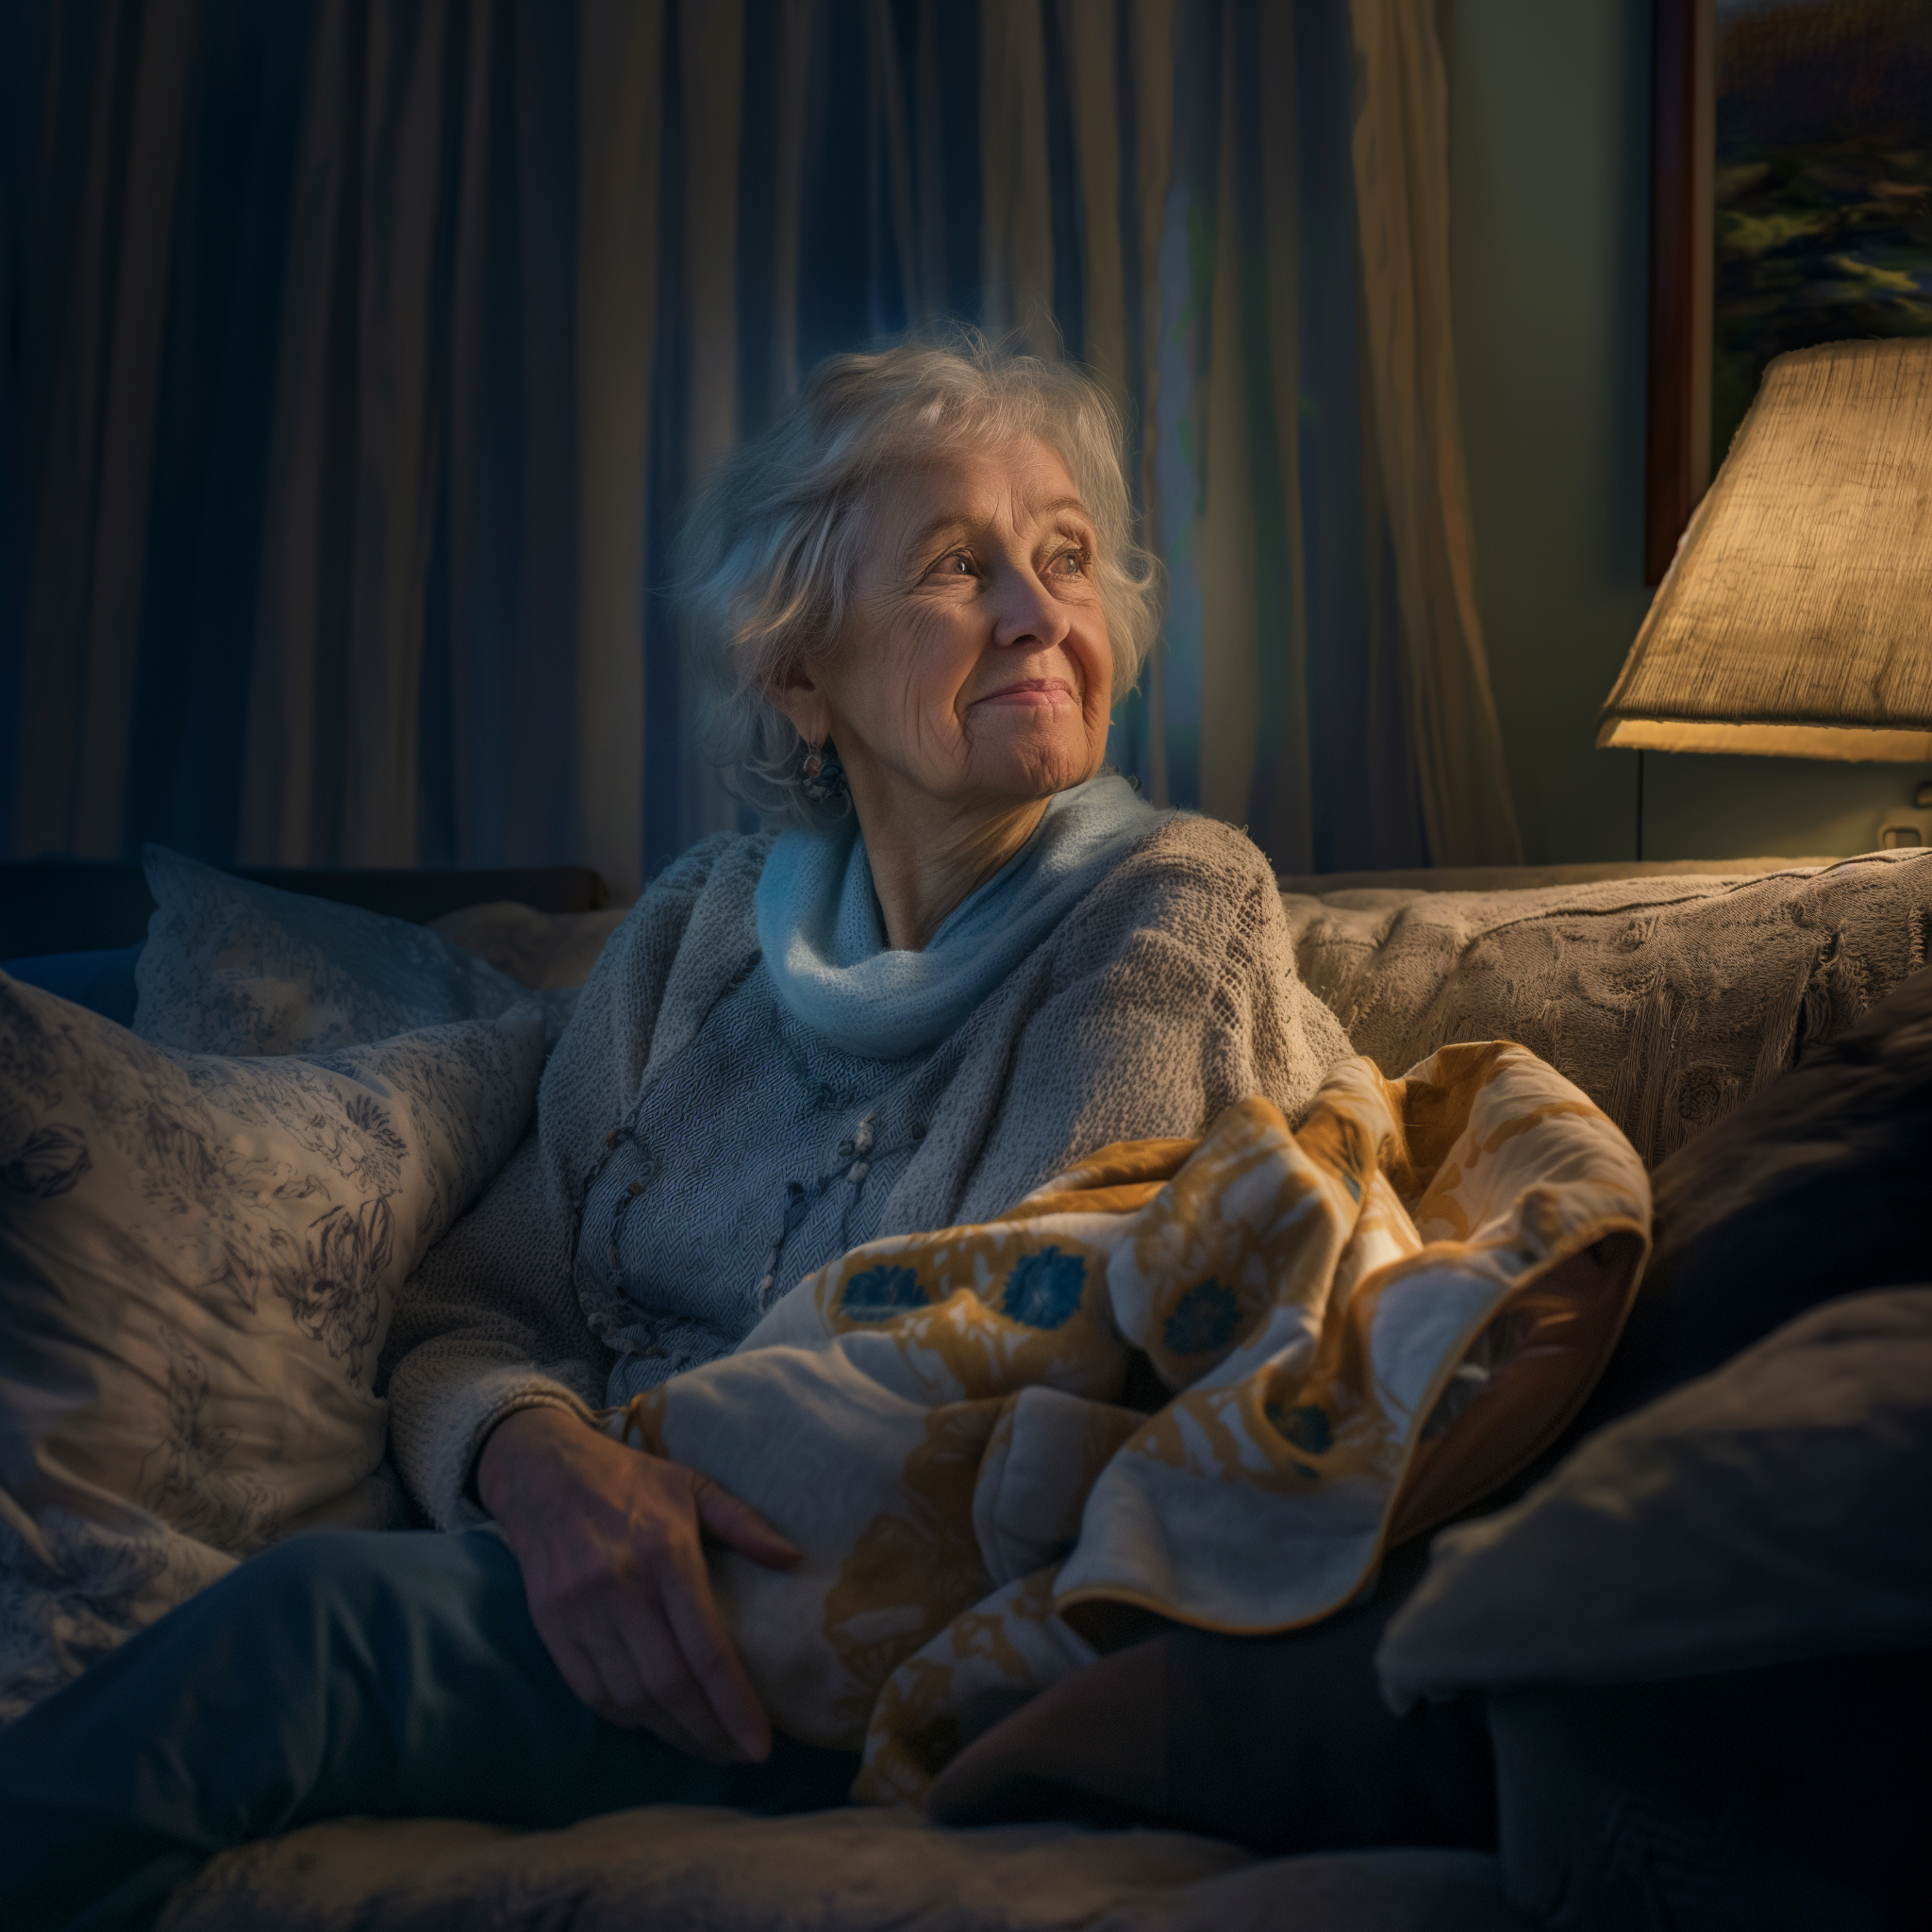 Una abuela sonríe sentada en un sofá por la noche | Fuente: Midjourney